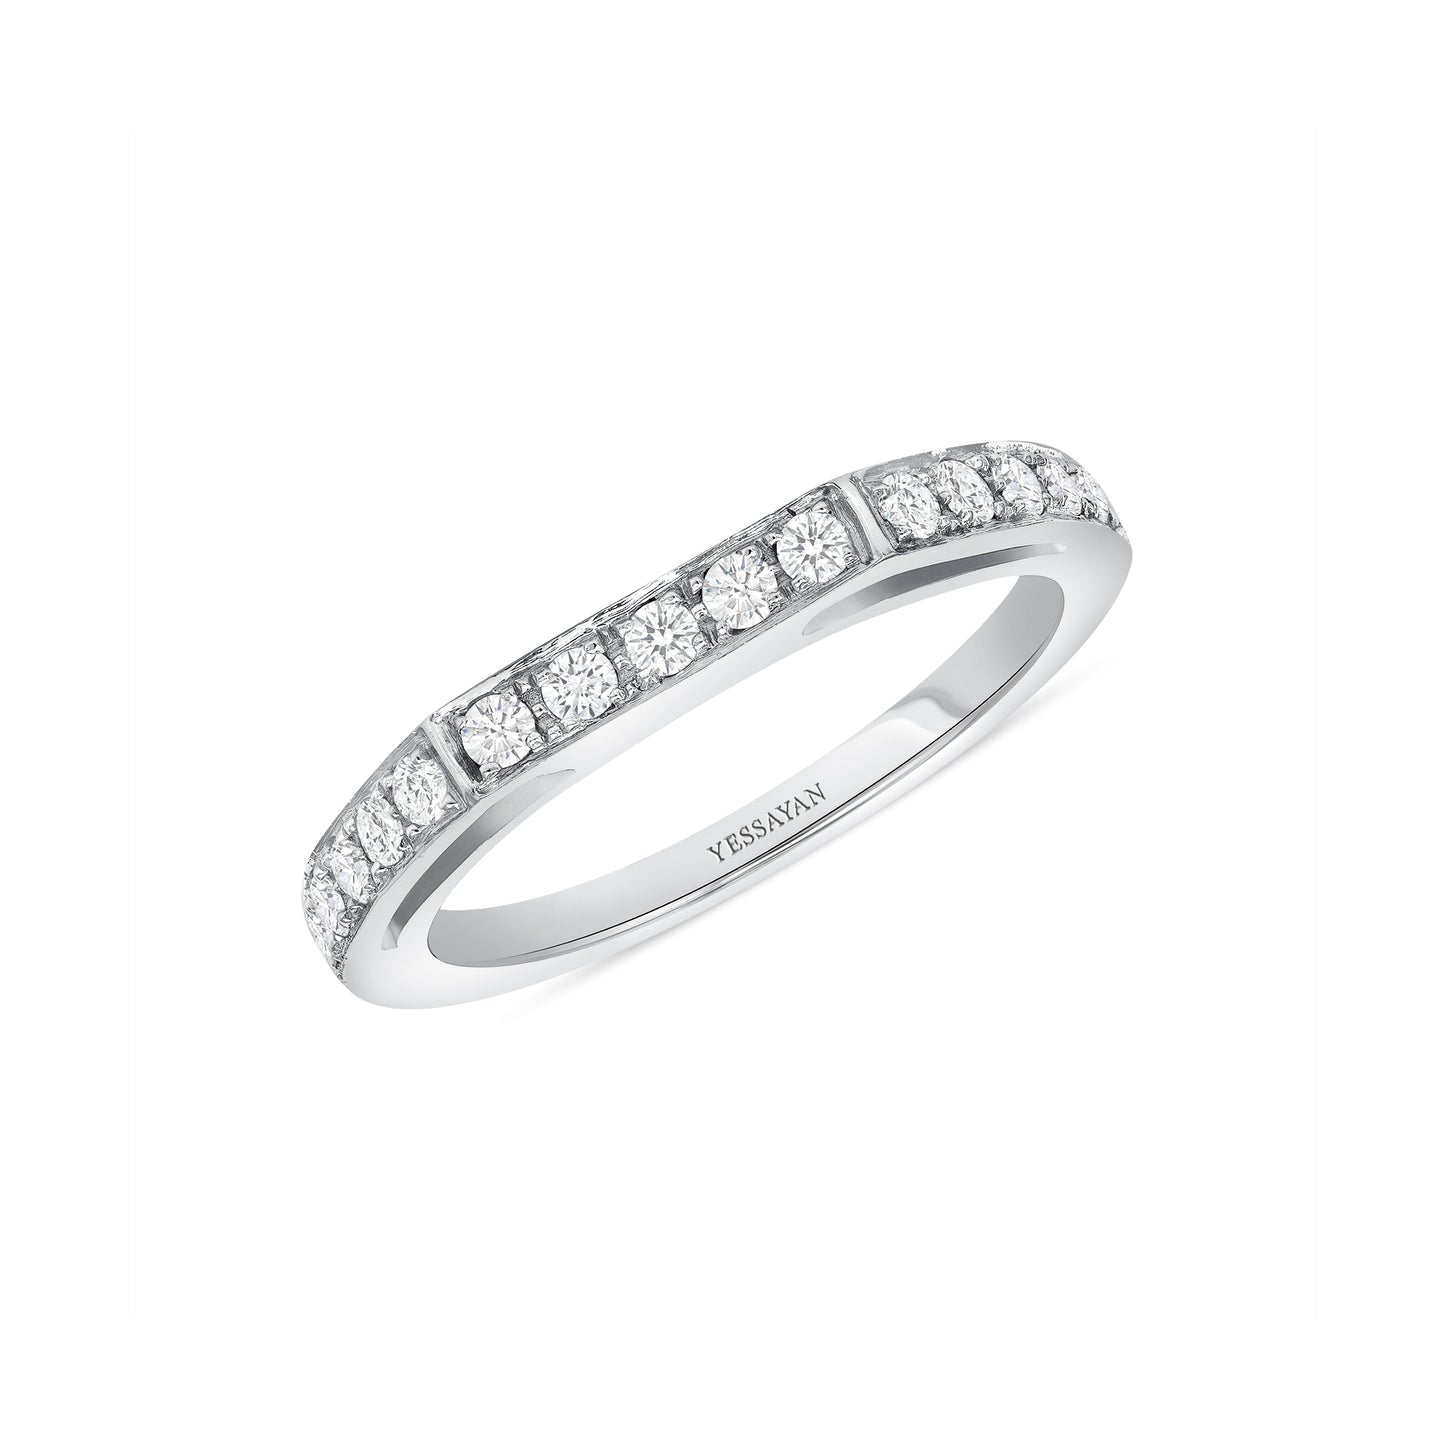 Thin Ring Diamond Angled Band Ring